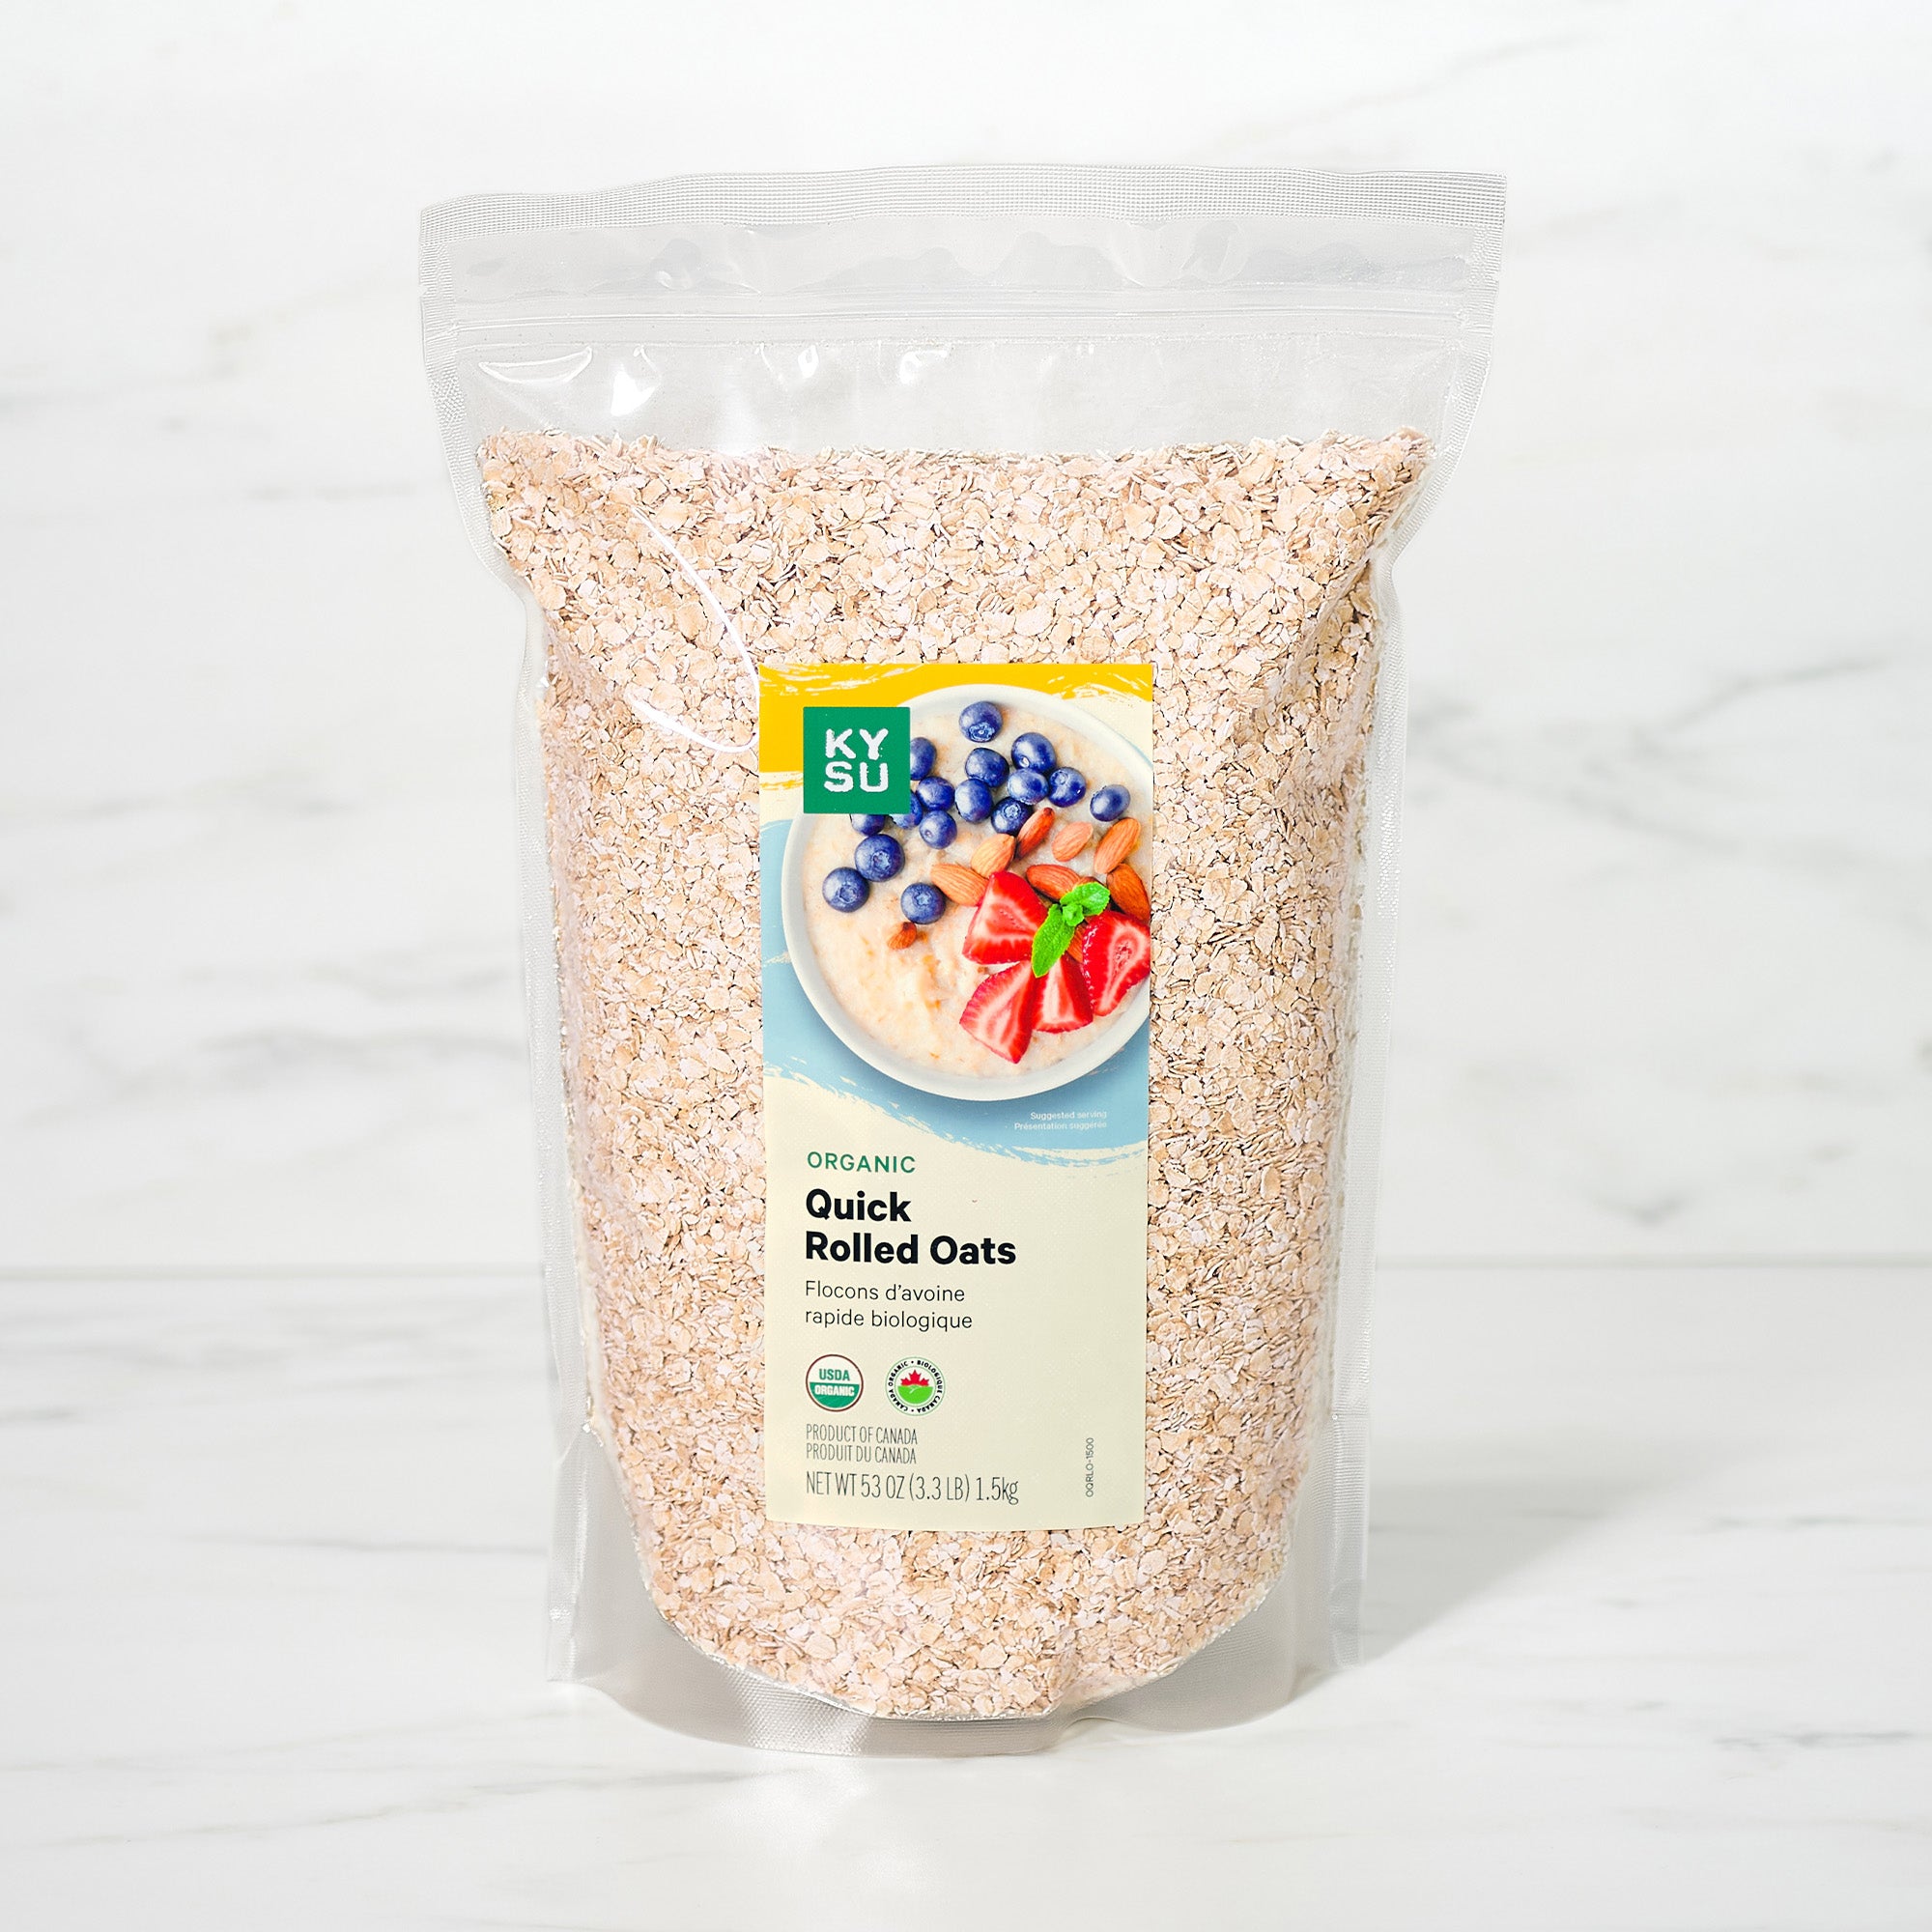 Organic quick rolled oats, 3.3 lb